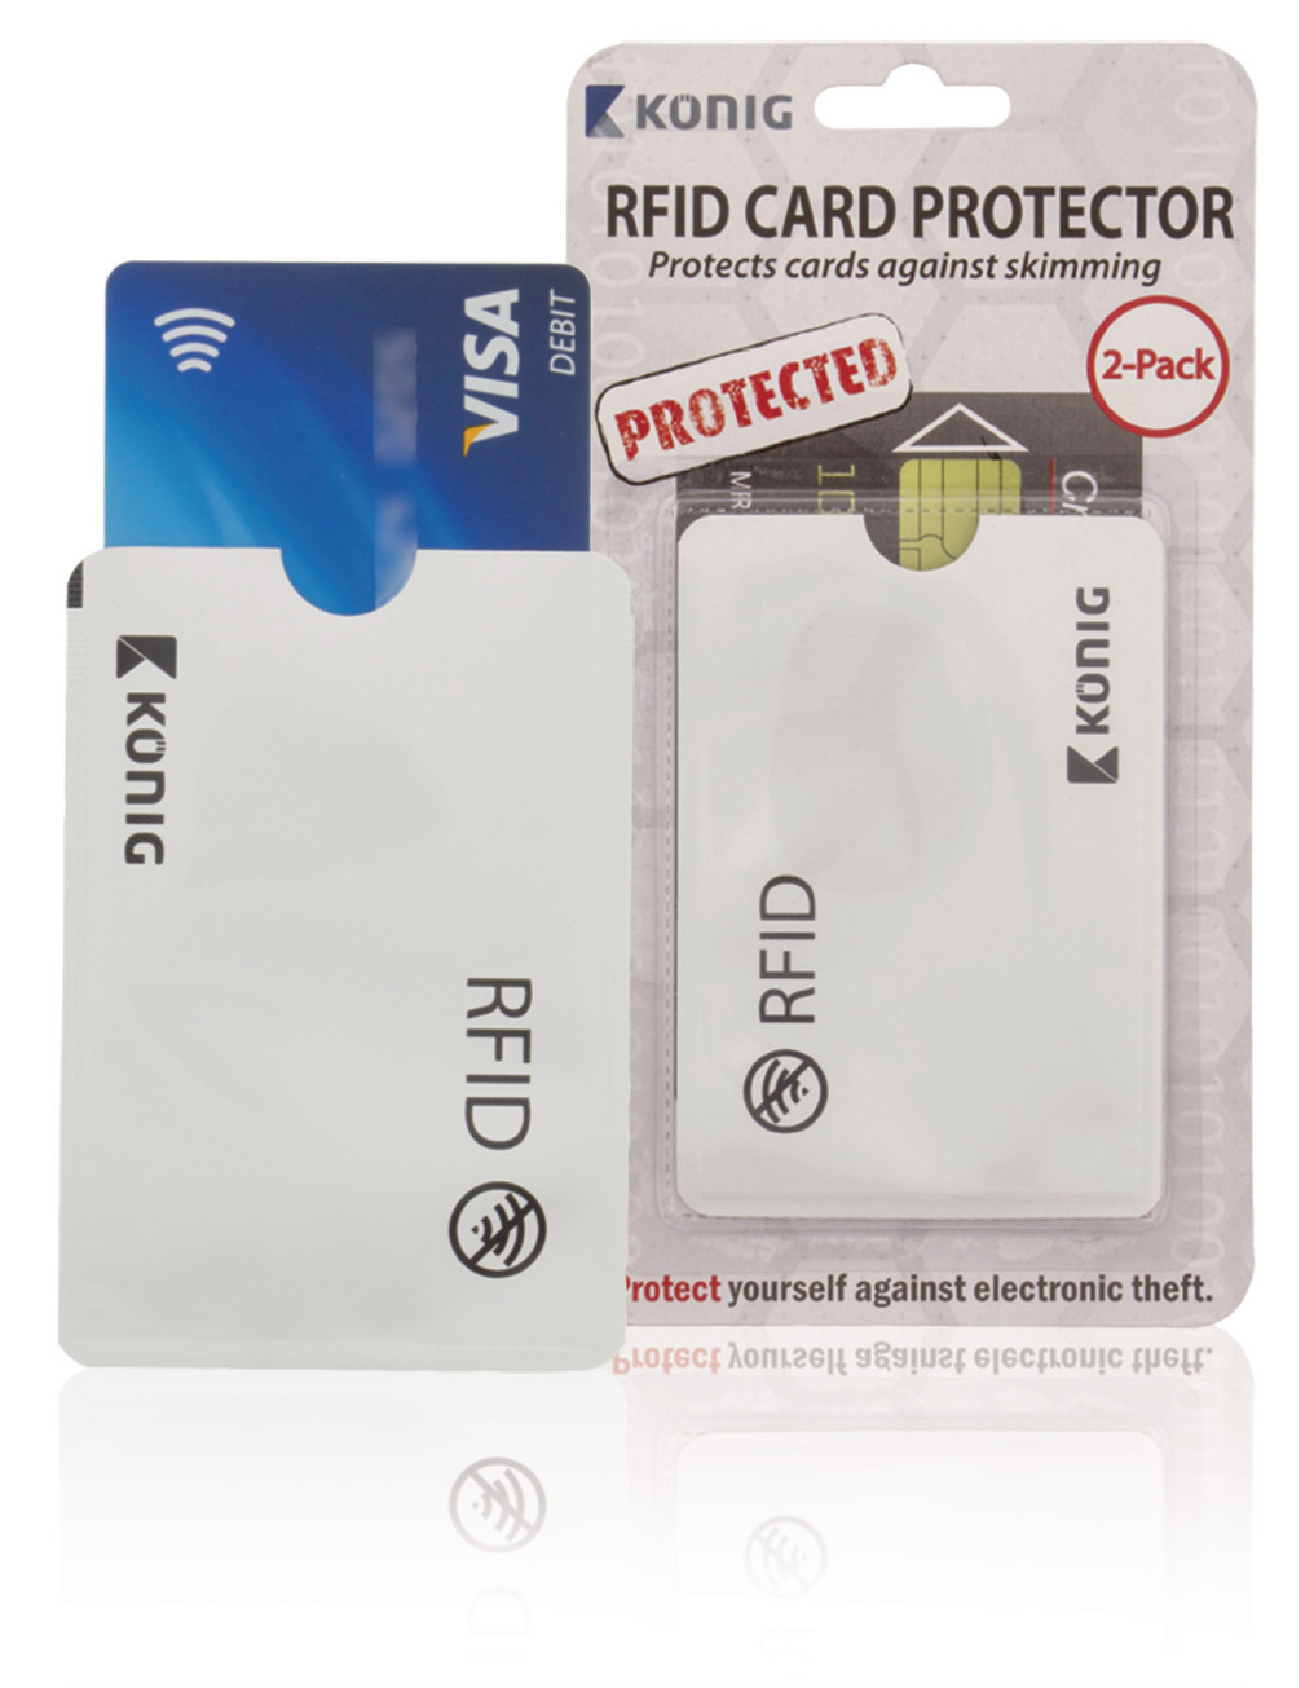 Buy This Today - Bankpas beschermer tegen draadloze fraude - Set van 2 stuks